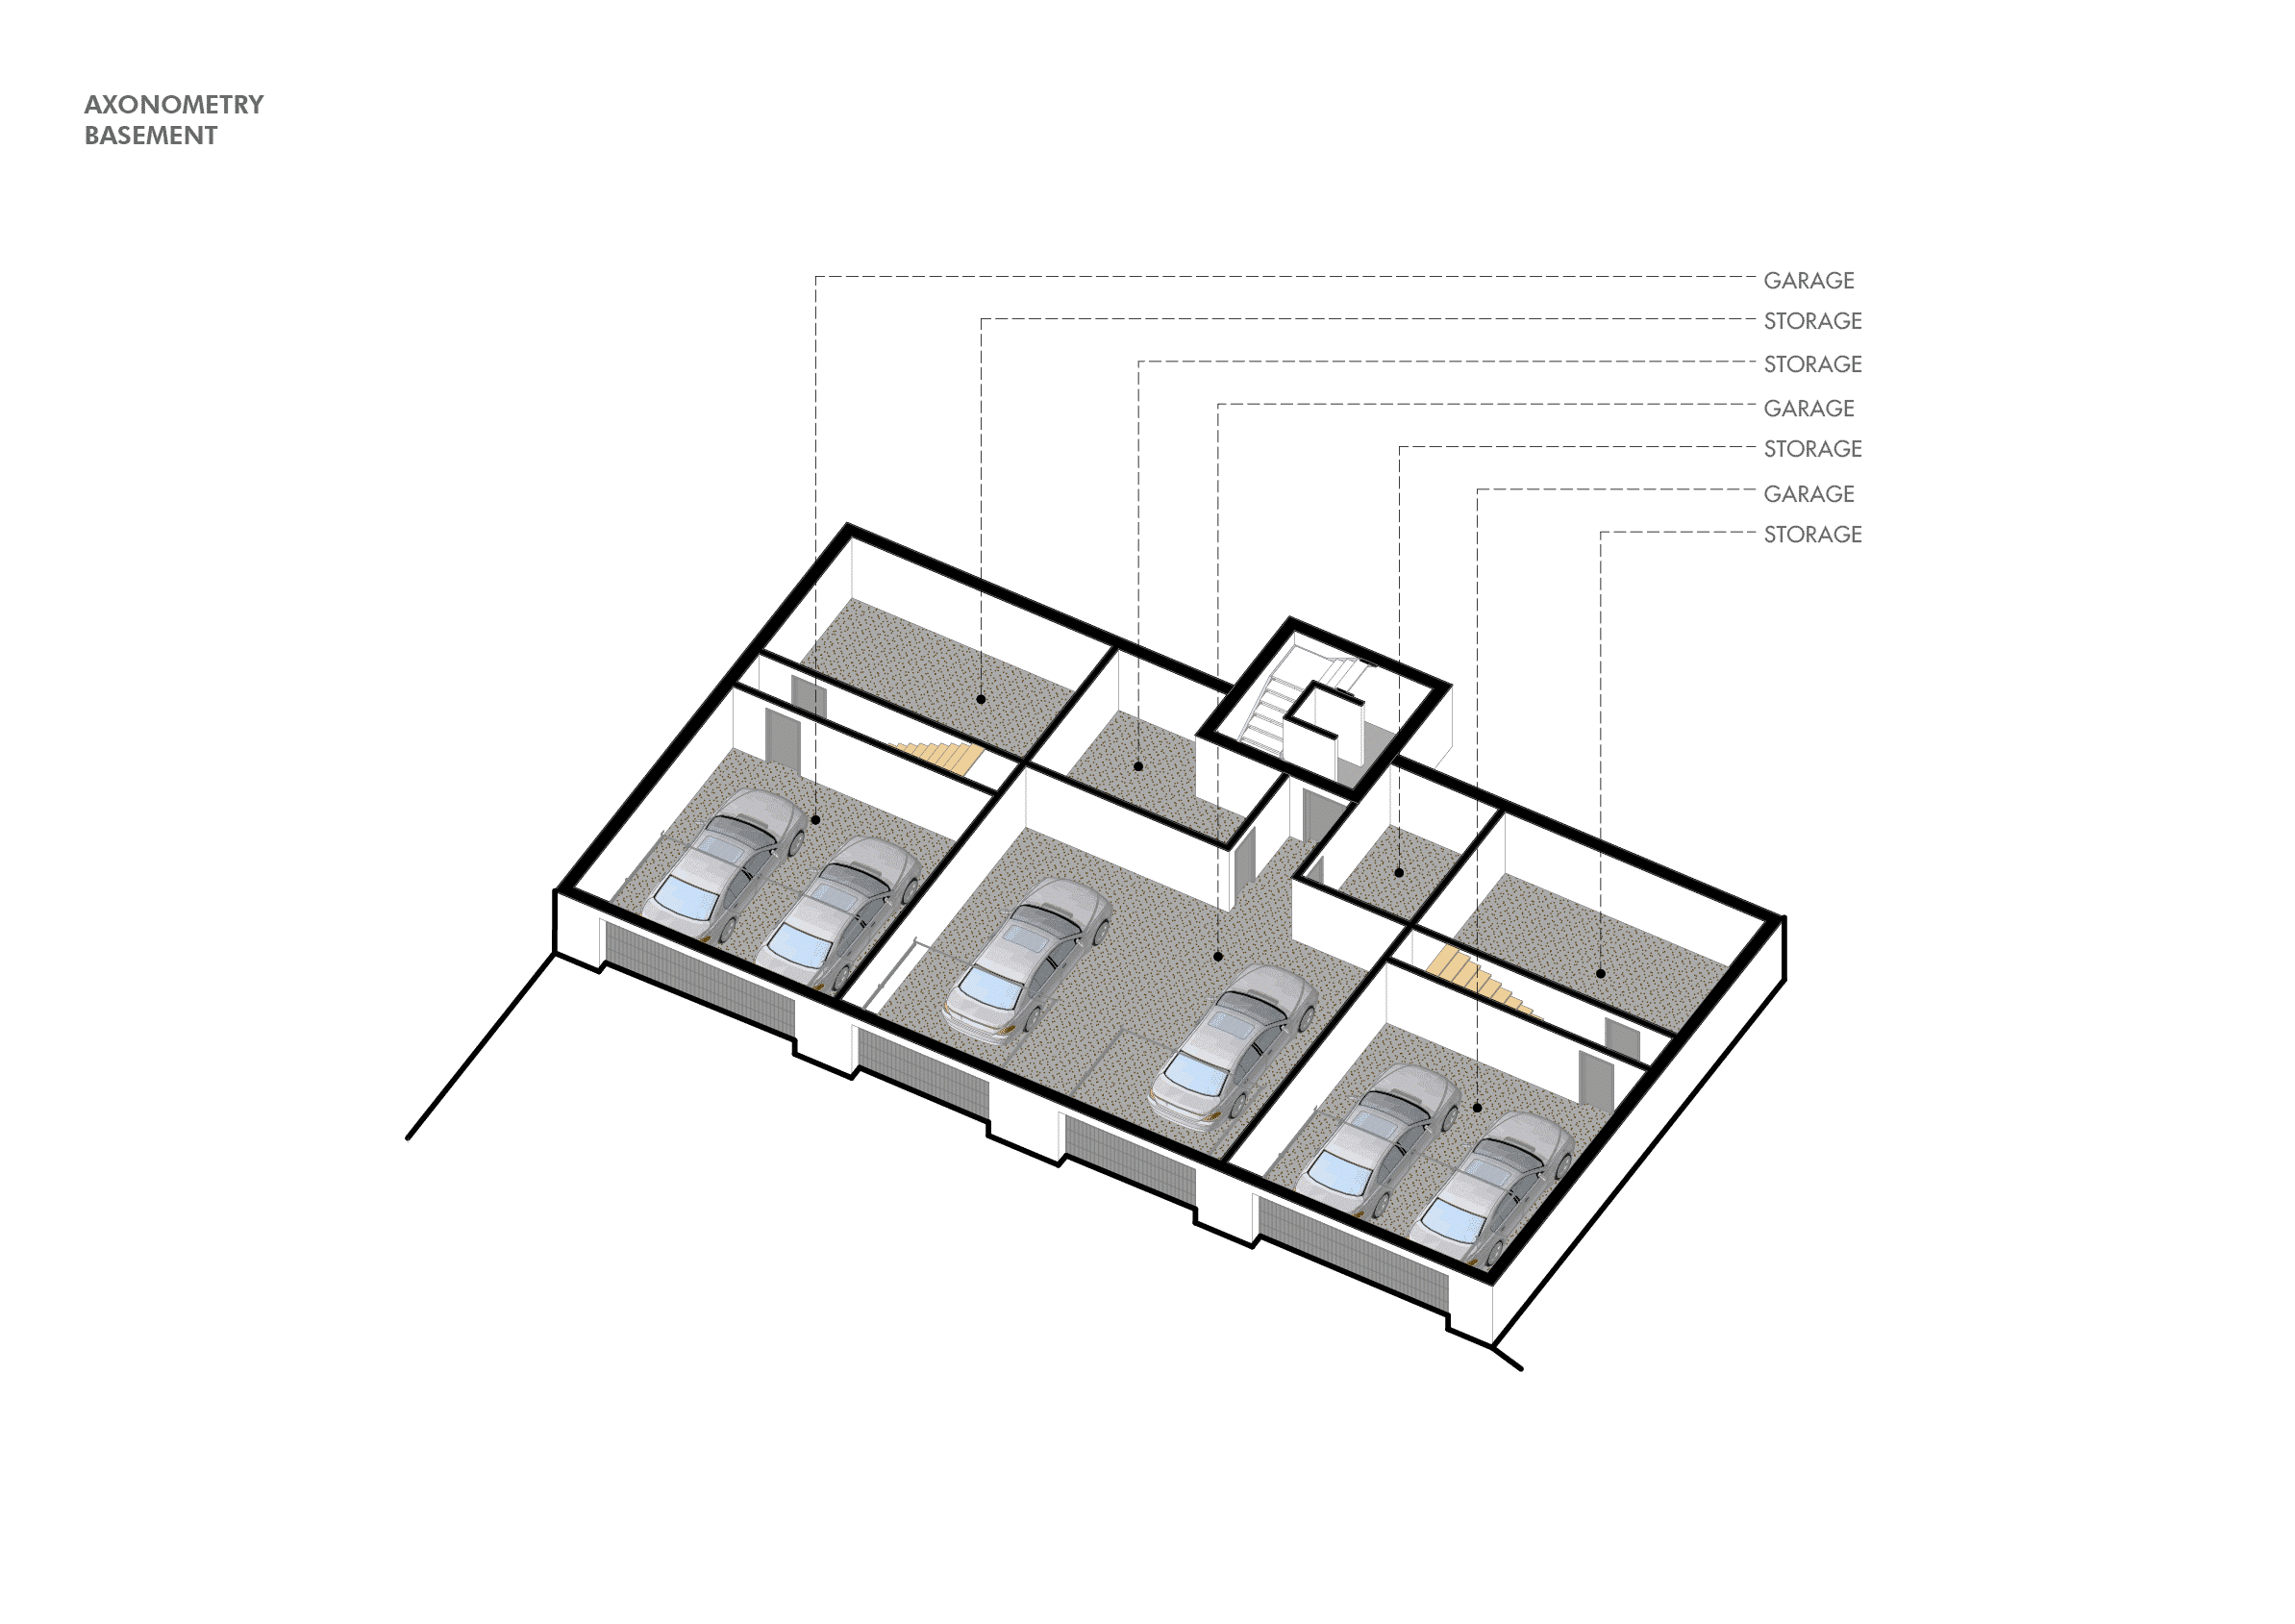 013-swiss-project-axonometry-basement2x